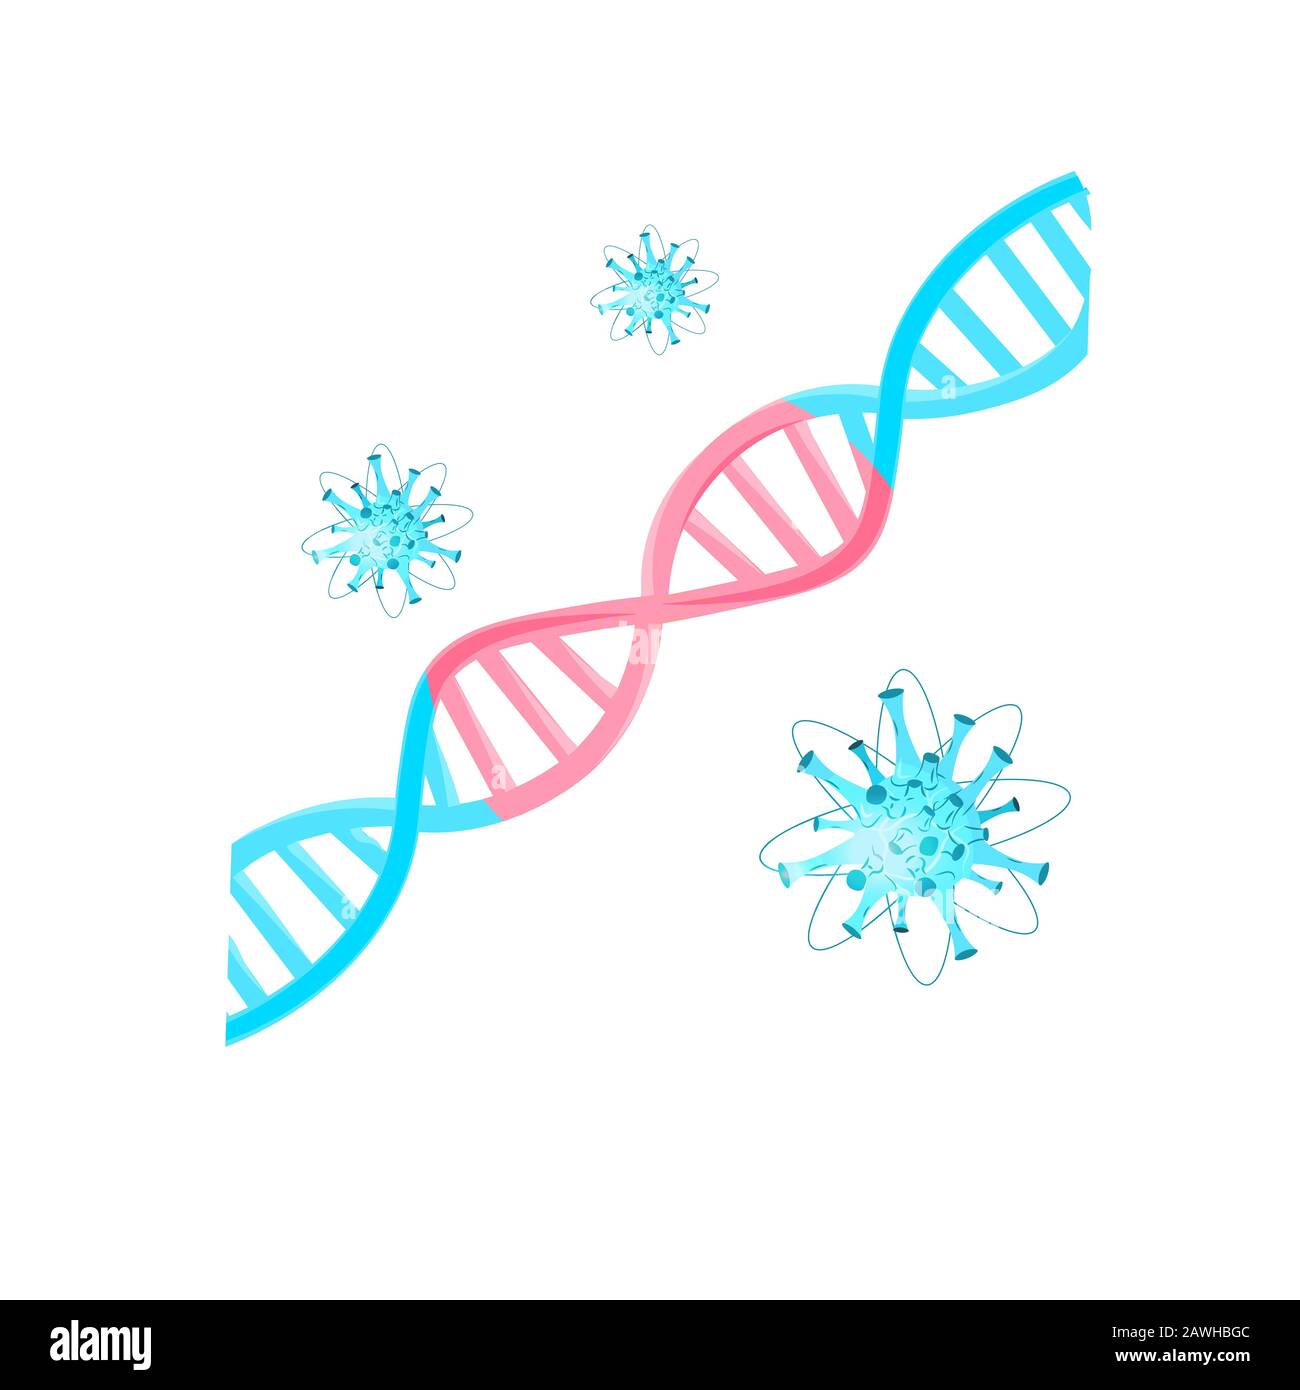 Illustrazione del vettore di rischio sanitario per la pandemia di malattia molecolare MERS-cov del virus influenzale fluttuante delle cellule wuhan coronavirus 2019-nCoV Illustrazione Vettoriale